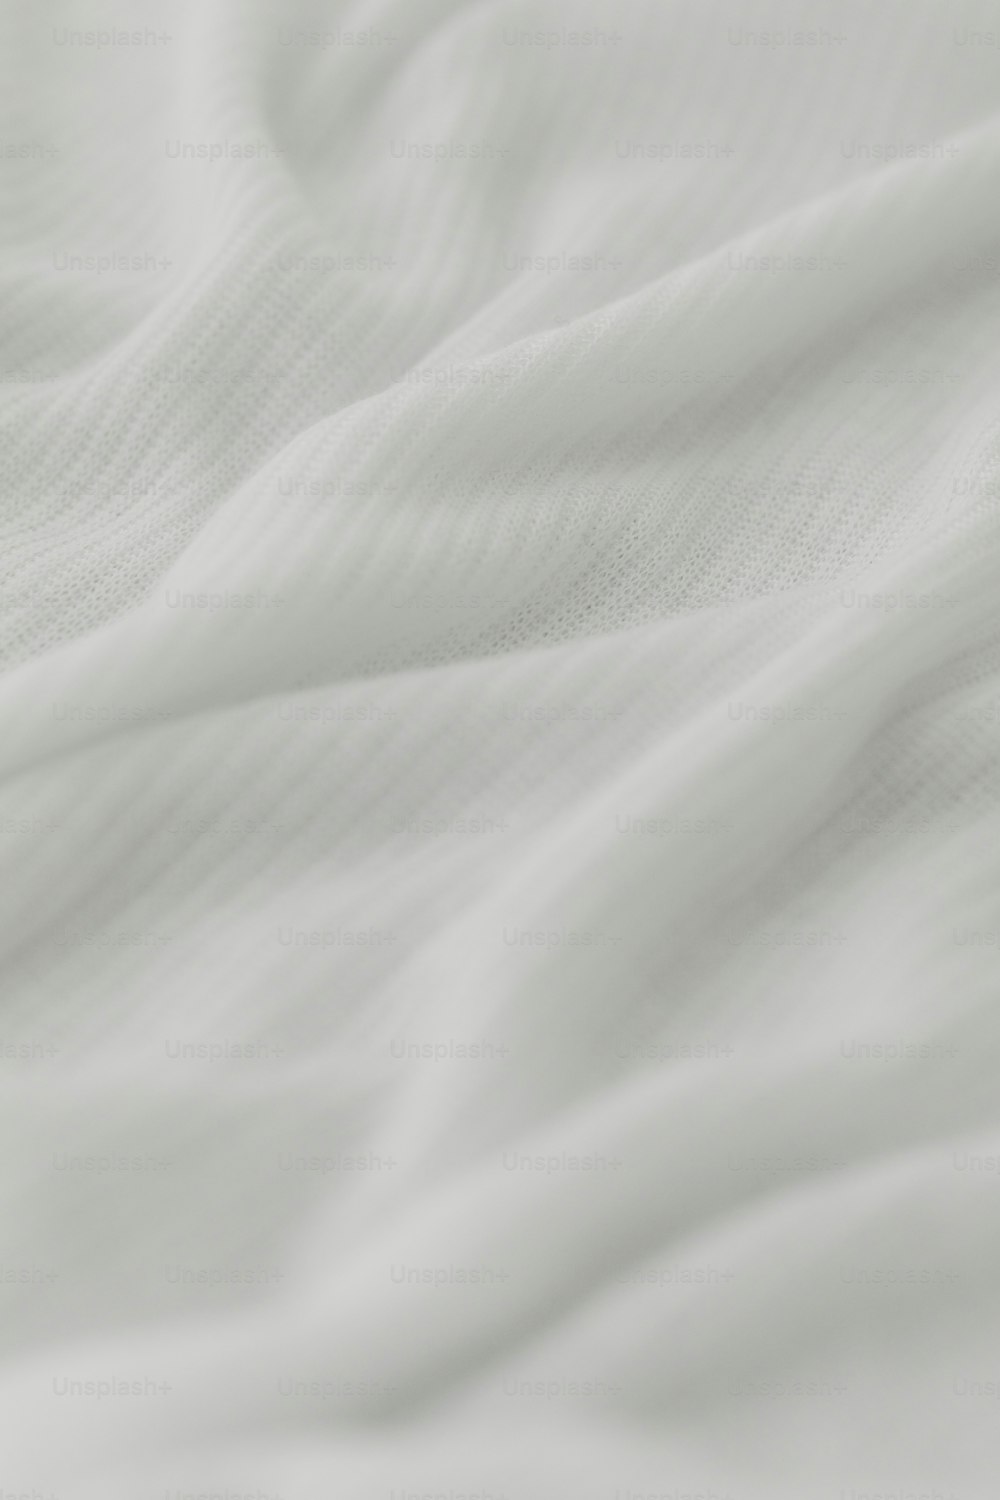 white blanket texture